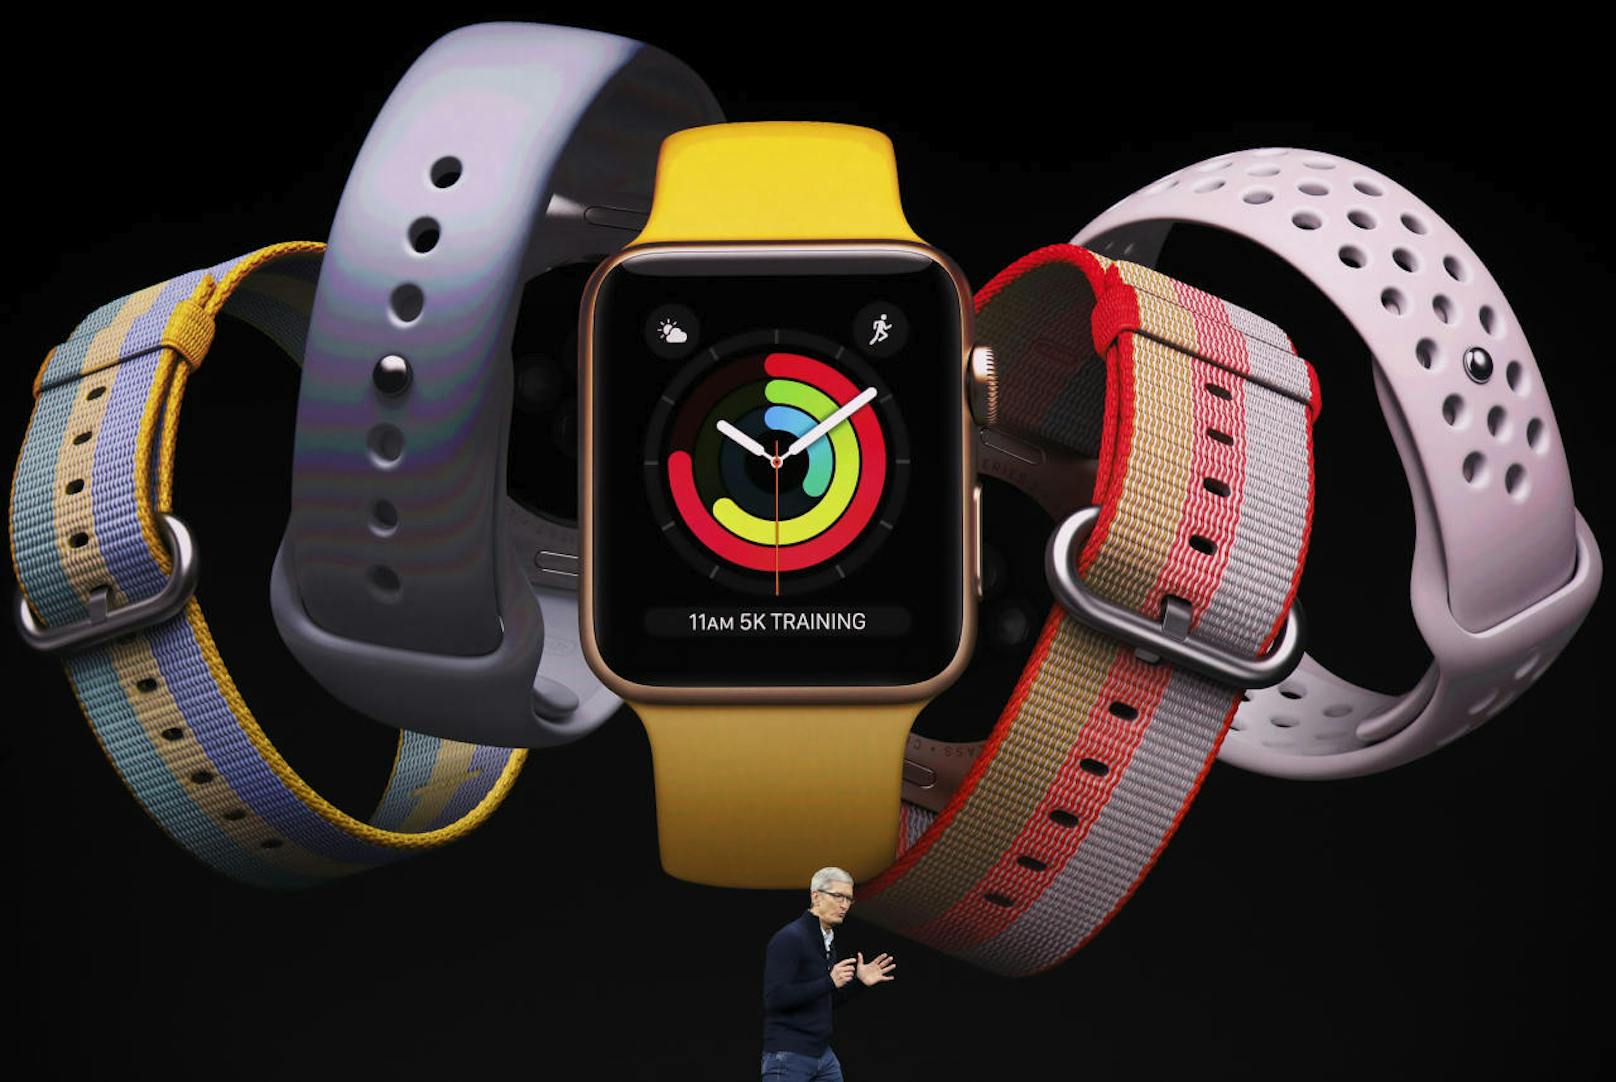 Die Uhr kann sich nun ohne iPhone mit dem Internet verbinden. So kann auch unterwegs Musik gestreamt werden. Die Watch wird so zum modernen Walkman.